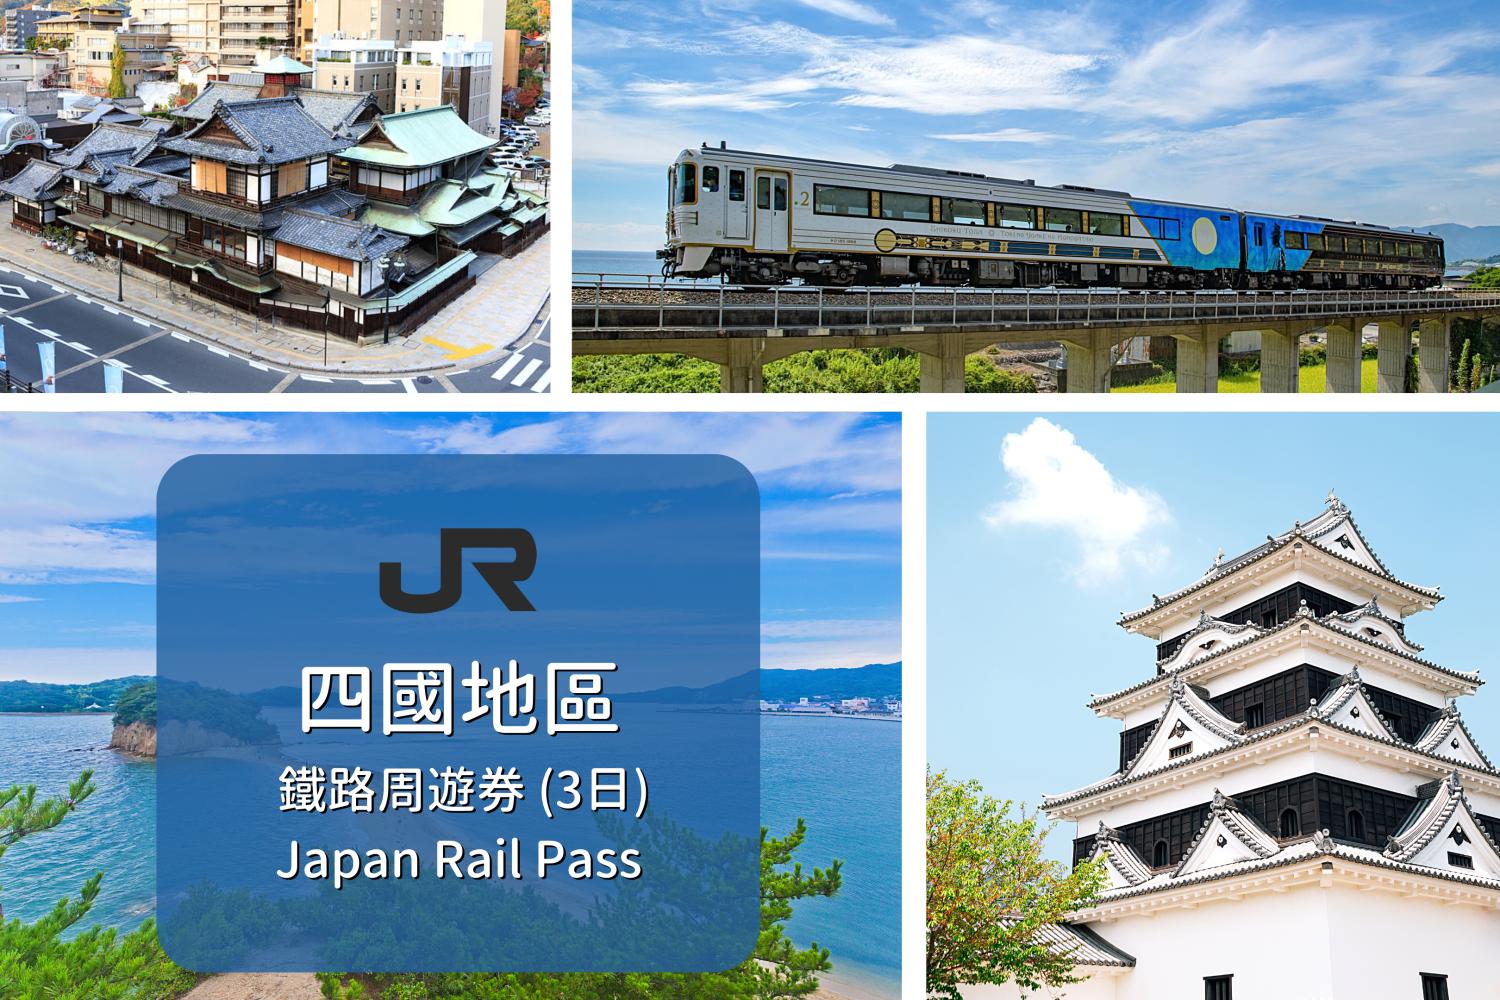 【飽覽四國風光】四國地區鐵路電子券 JR Shikou Pass(3天)